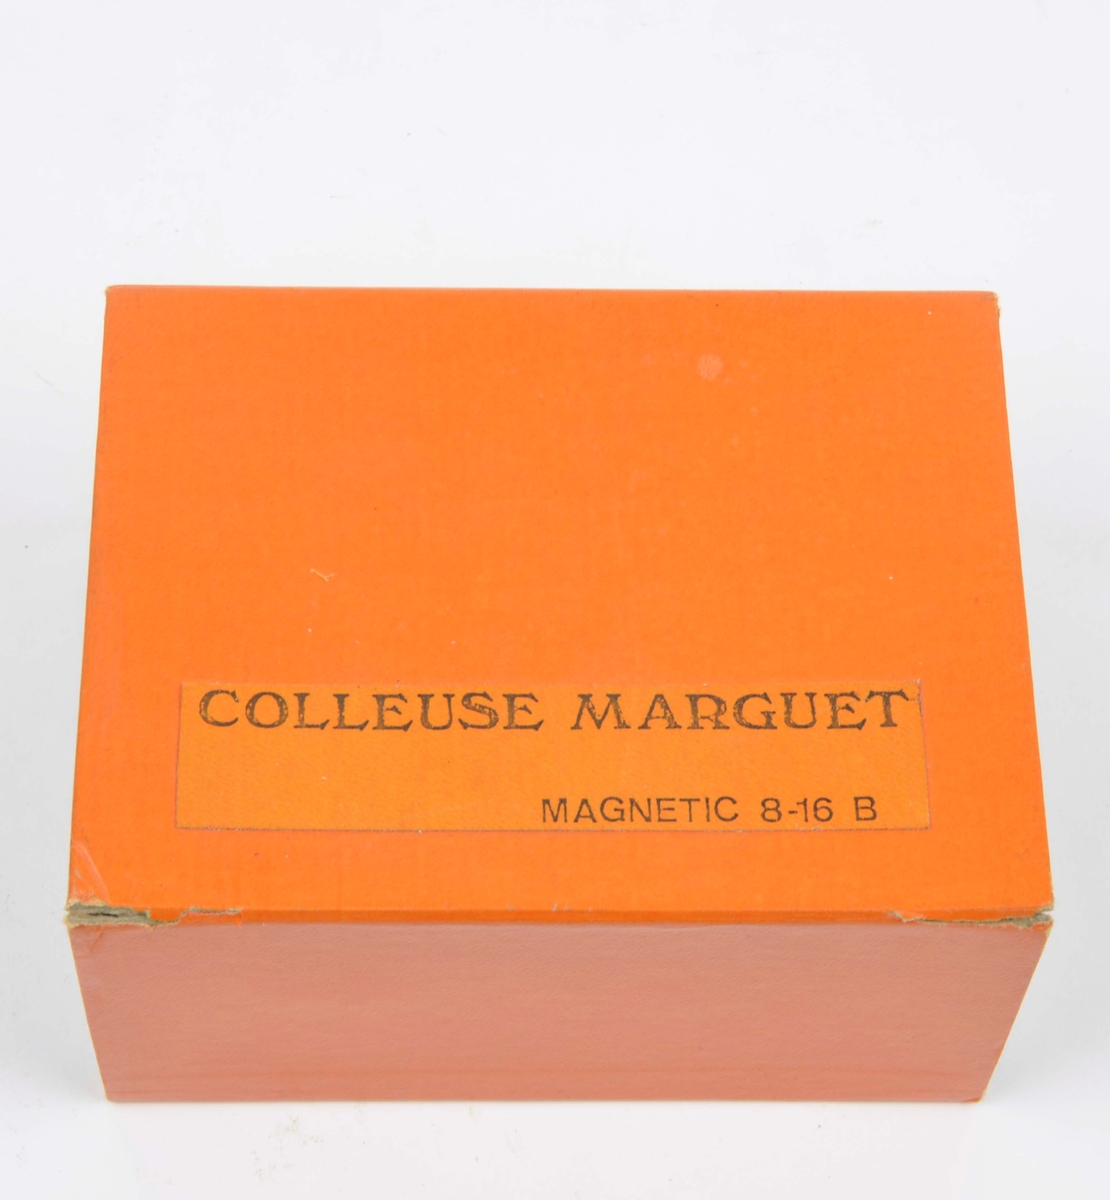 Filmsax av märket Marguet Magnetic 8-16 B. Filmsaxen ligger i sin tillhörande ask som är orange och har inskriften Colleuse Marguet Magnetic 8-16 B.